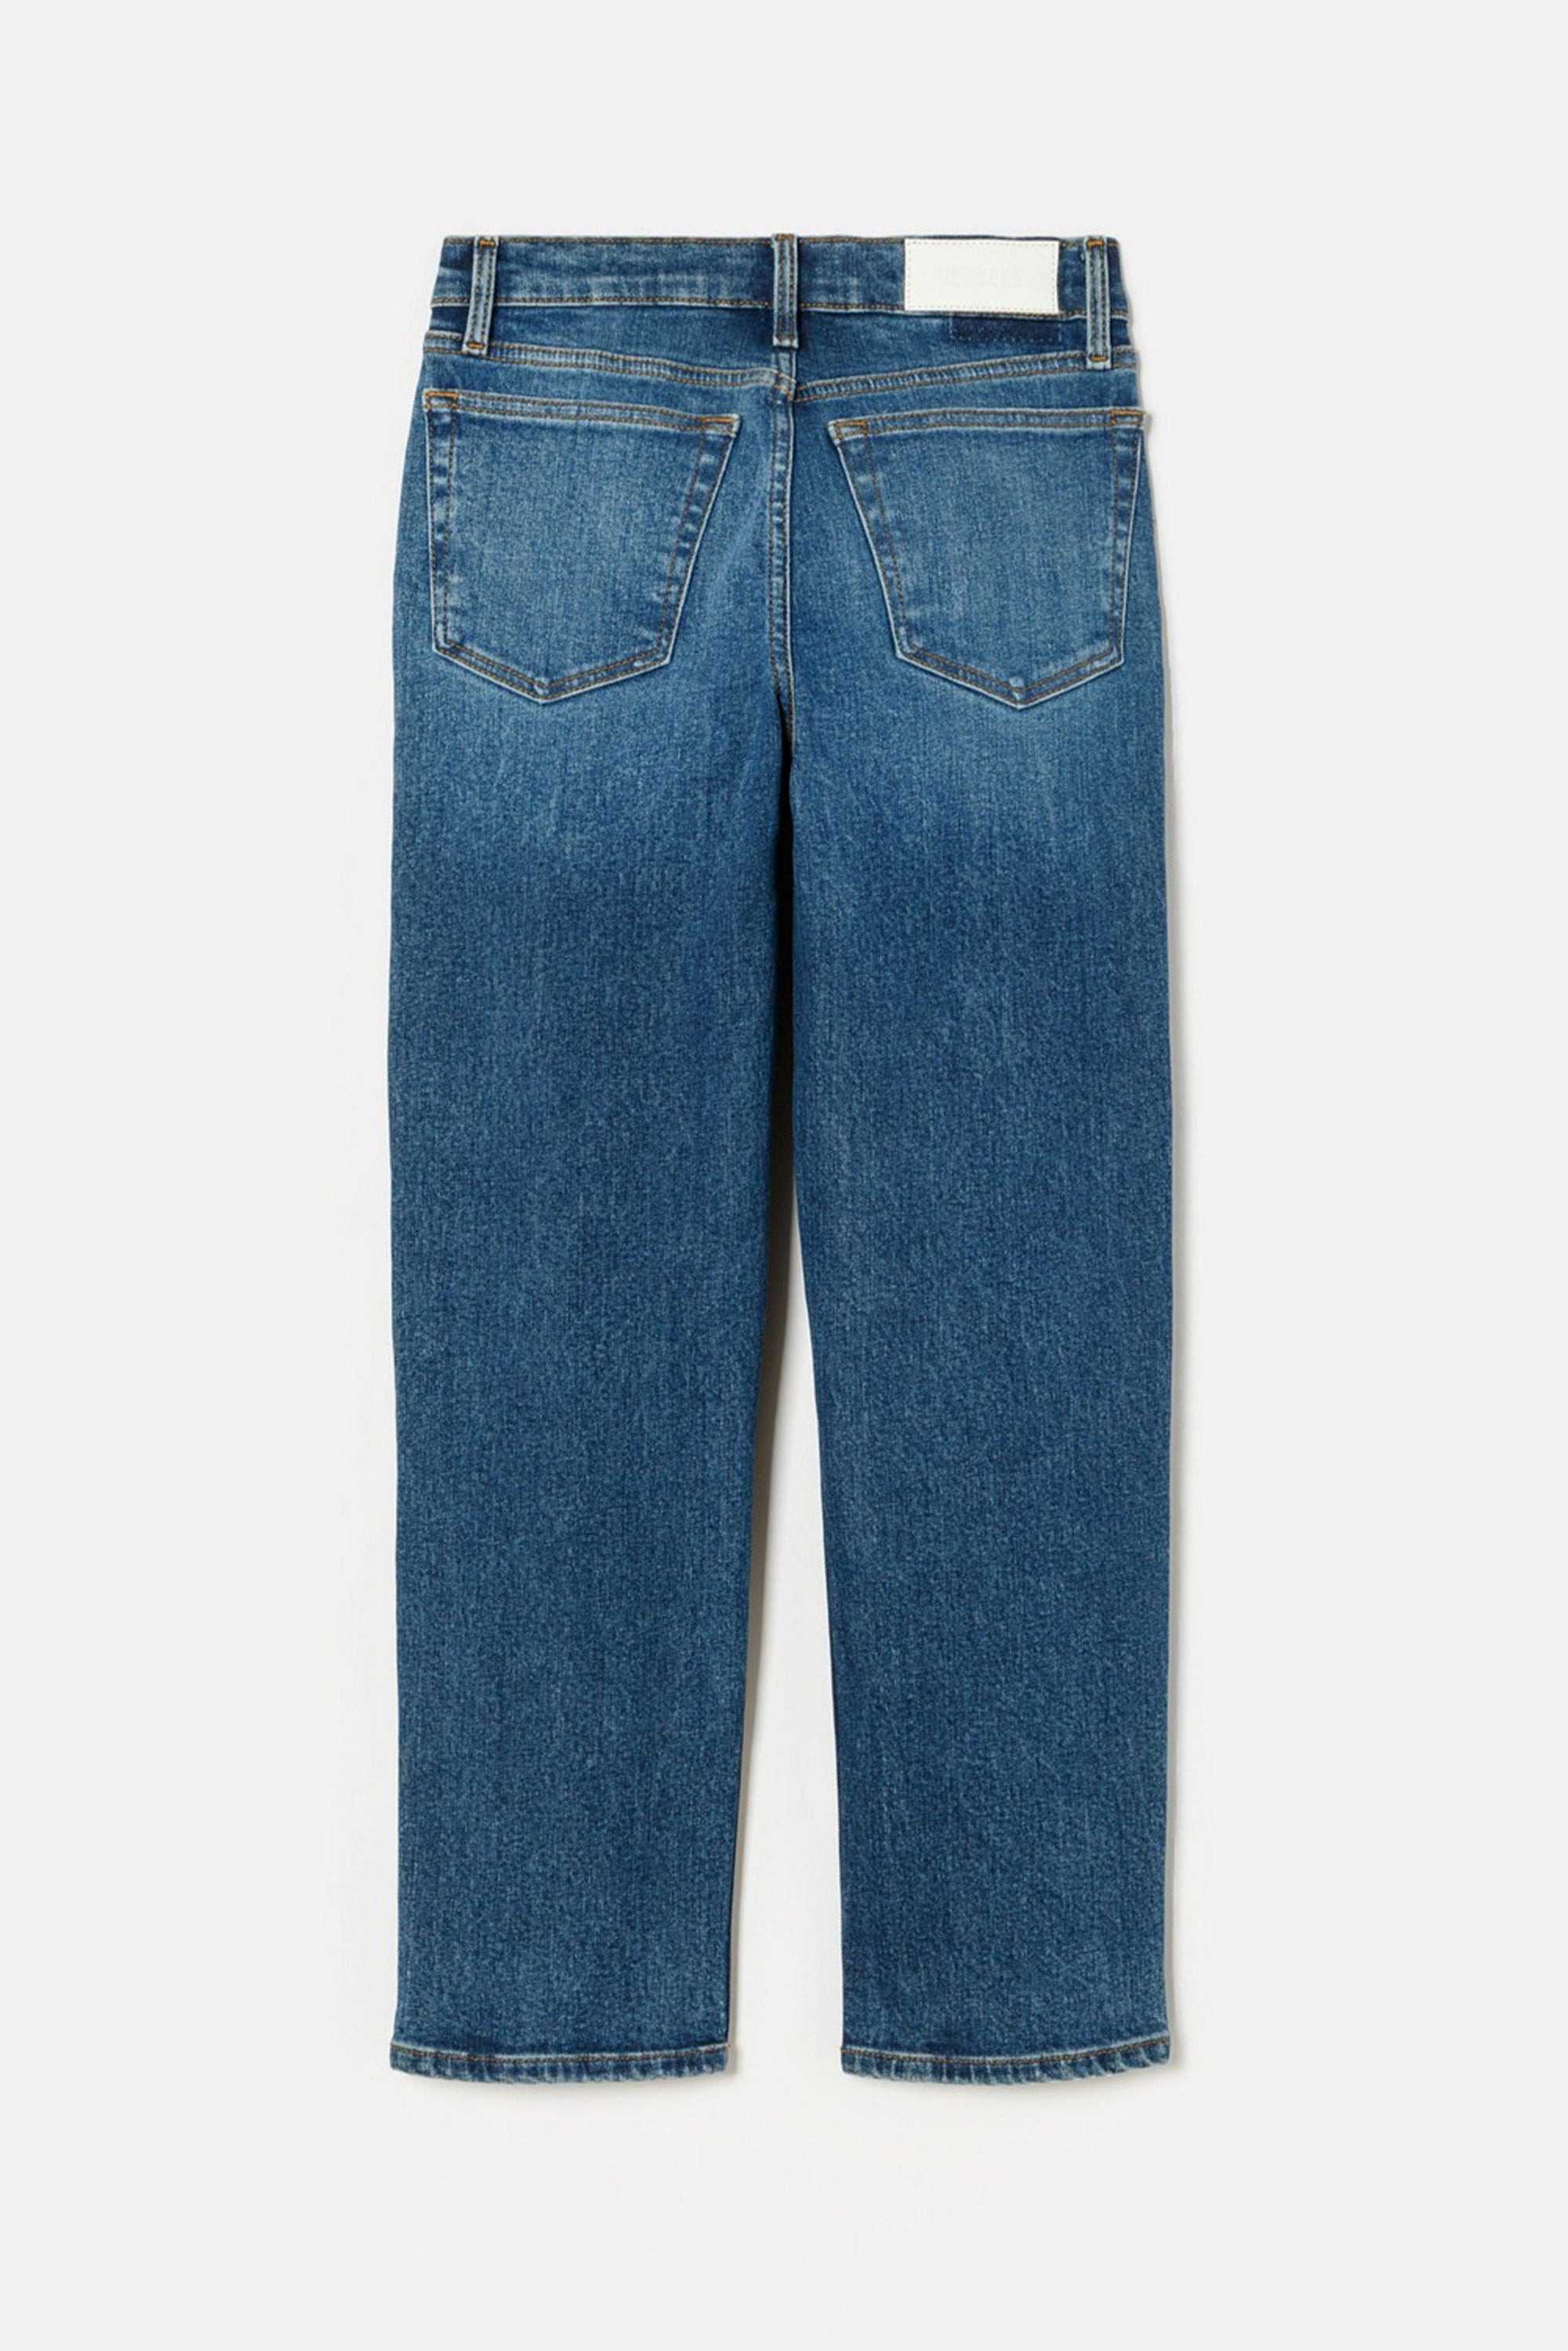 RE/DONE PANTALONE IN DENIM  Jeans da donna Re-Done Medium Skinny Blu scuro